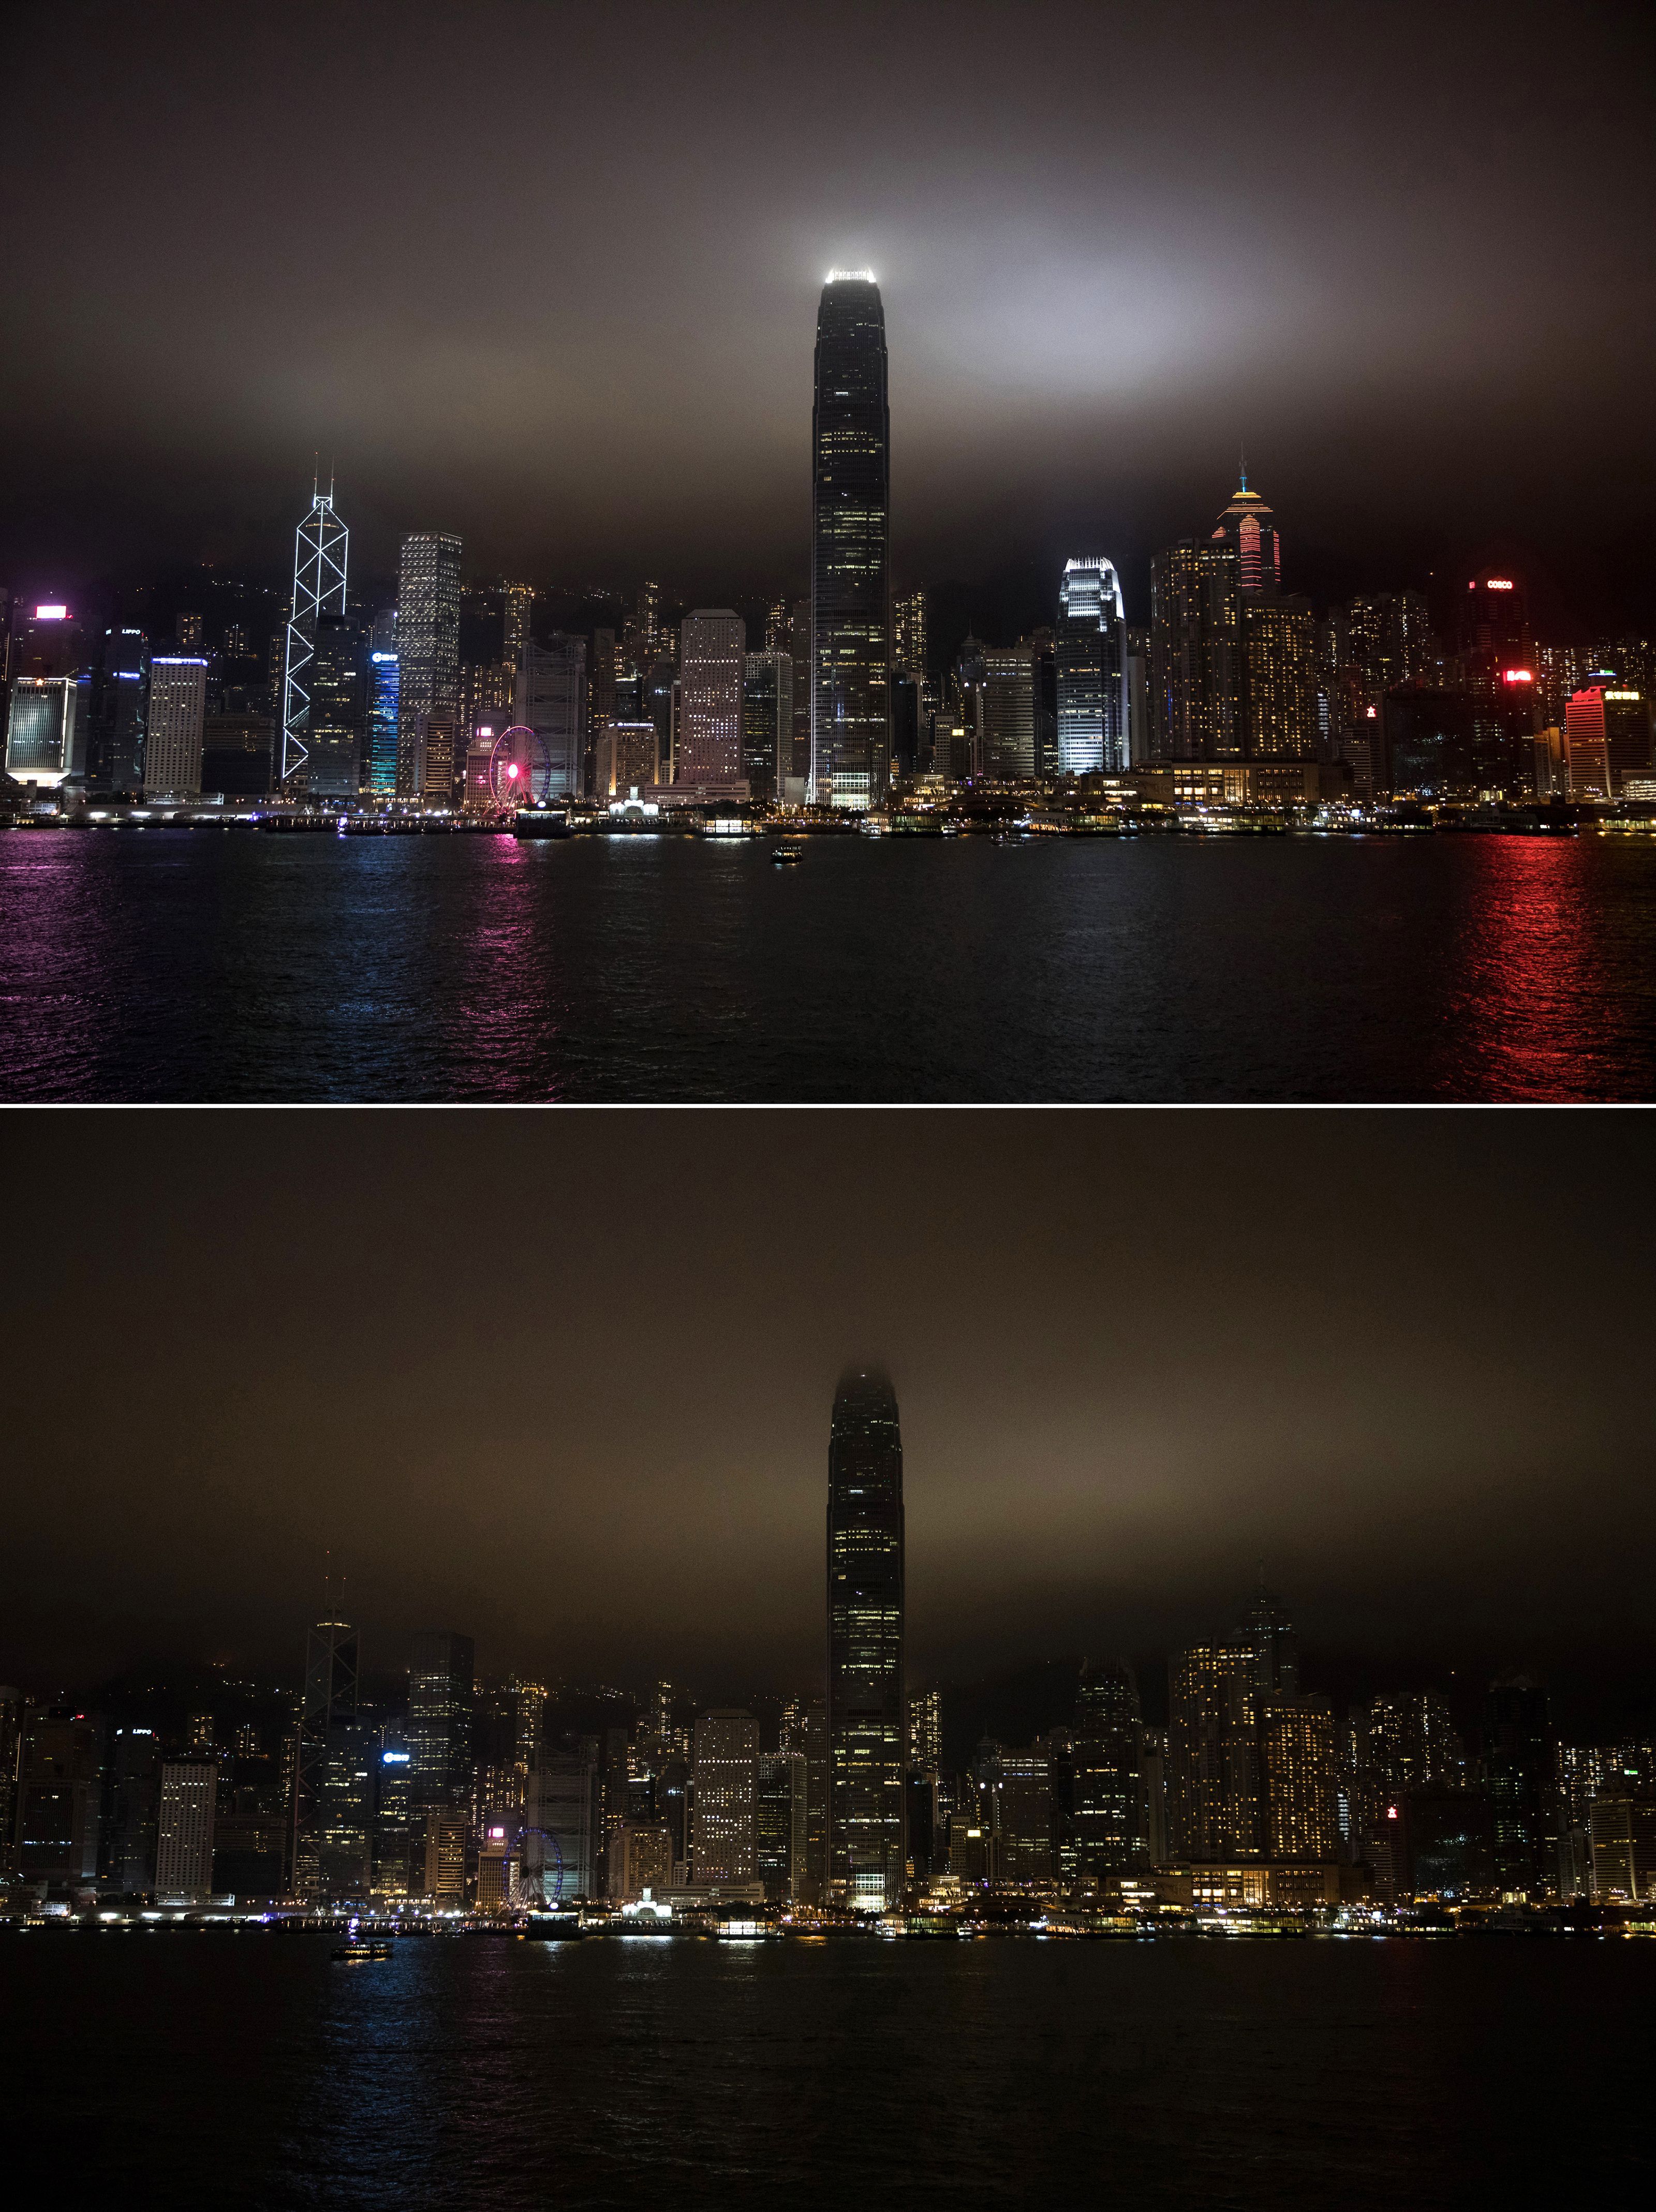 Hong Kong observes Earth Hour.